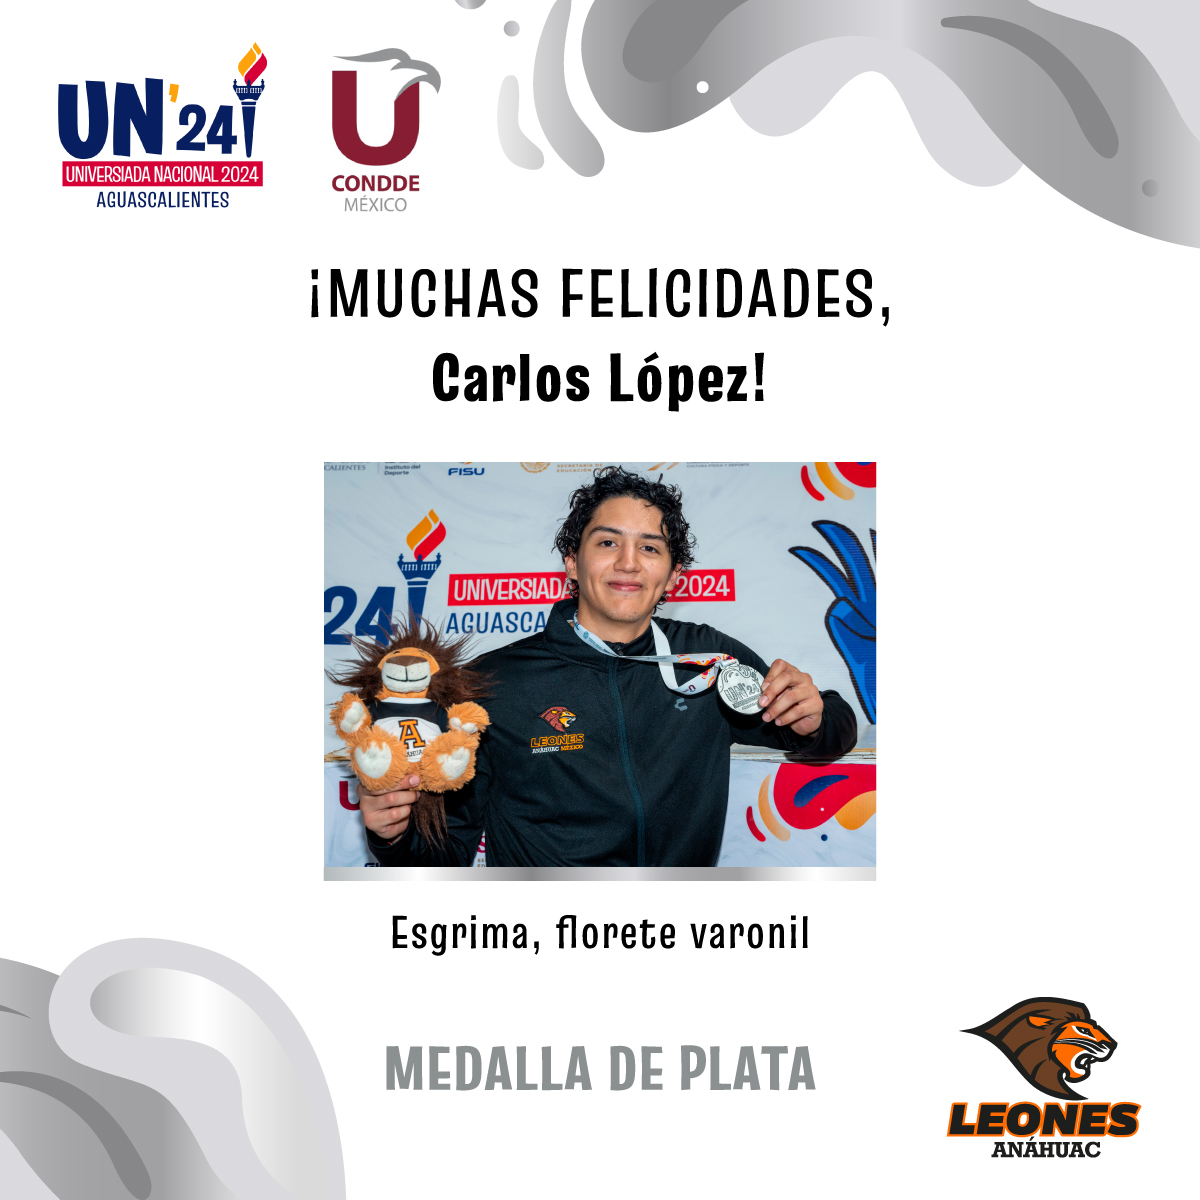 #VamosLeones ¡Medalla de plata para Carlos Lopez en Esgrima, florete varonil! 🥈👏🏼 Muchas felicidades 🙌🏼 #UniversiadaNacional2024 @ConddeMx @UniversiadaMX